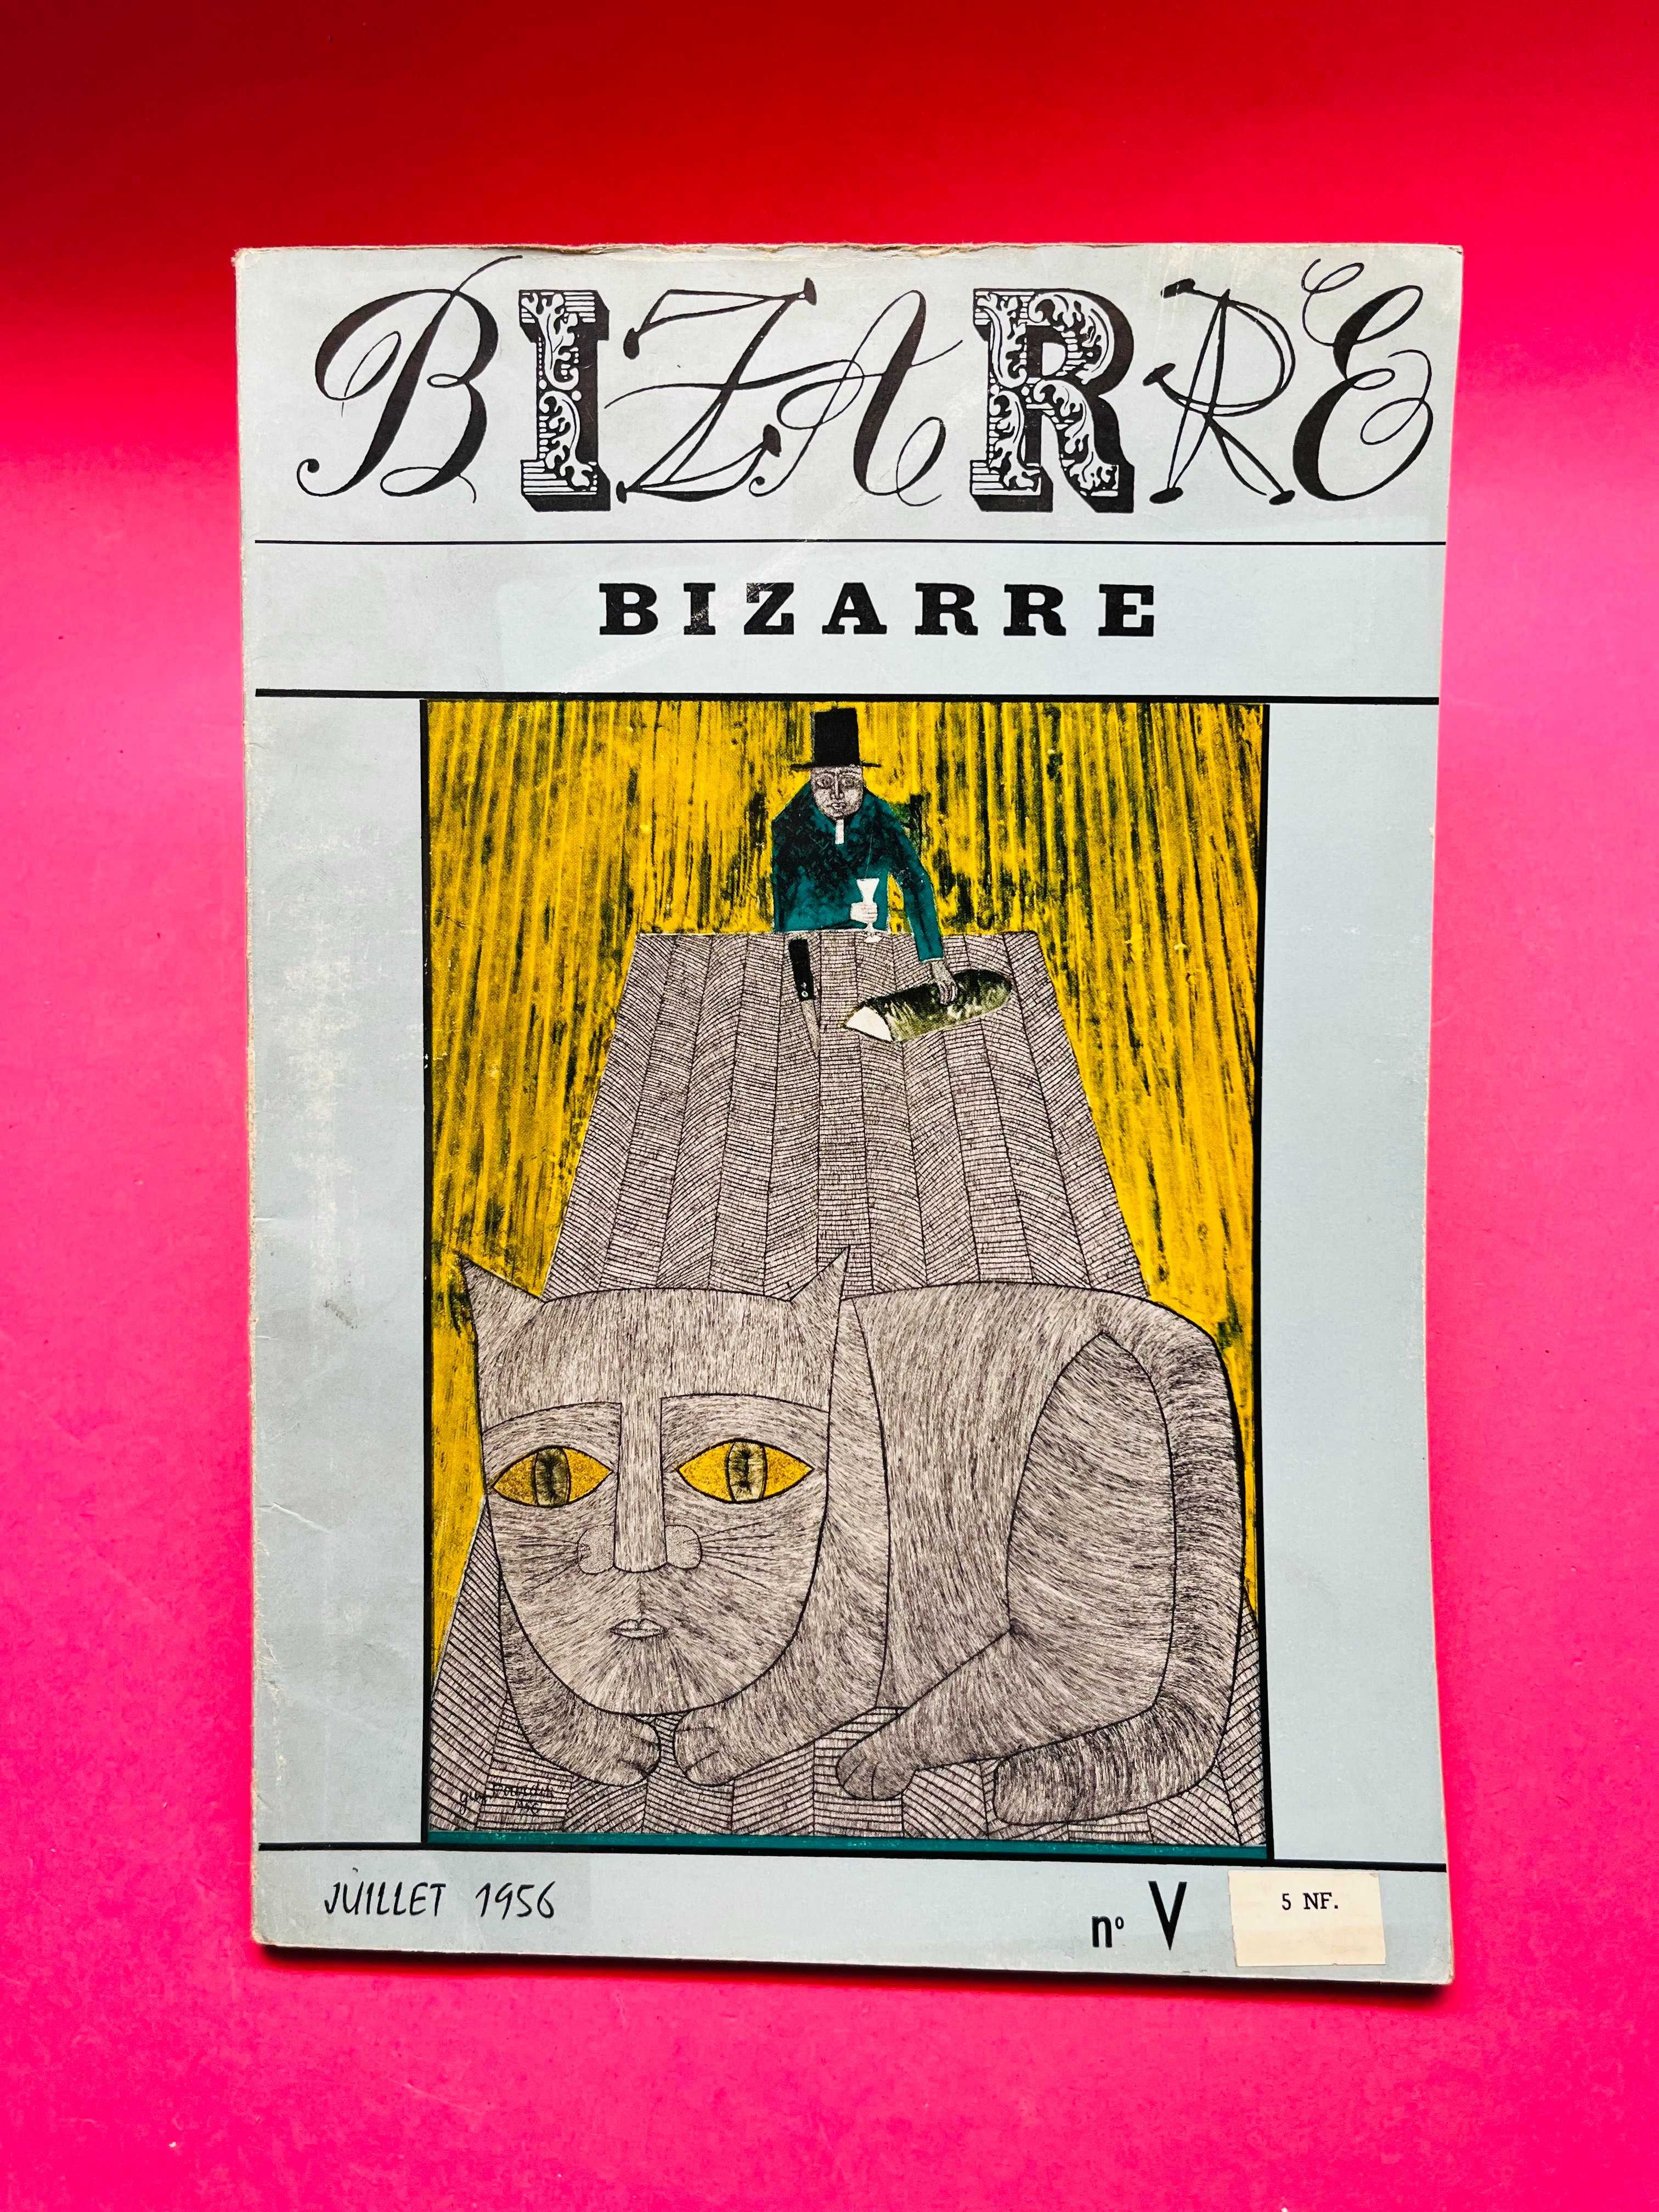 Bizarre - Bizarre - Juillet 1956 nº V